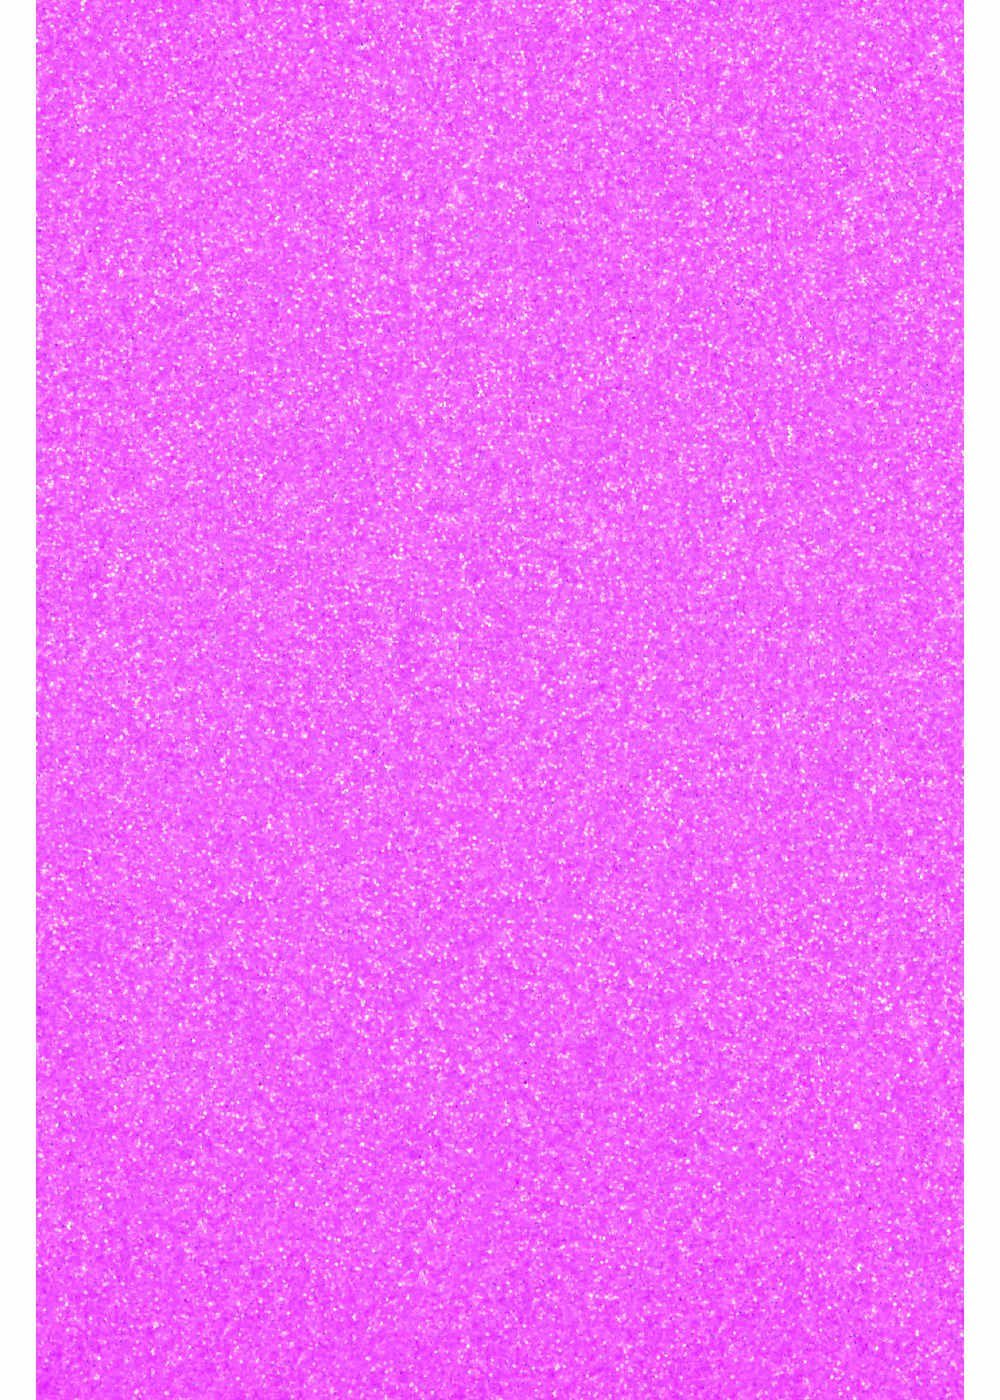 Hilltop Transparentpapier Glitzer Transferfolie/Textilfolie zum Aufbügeln, perfekt zum Plottern Neon Purple